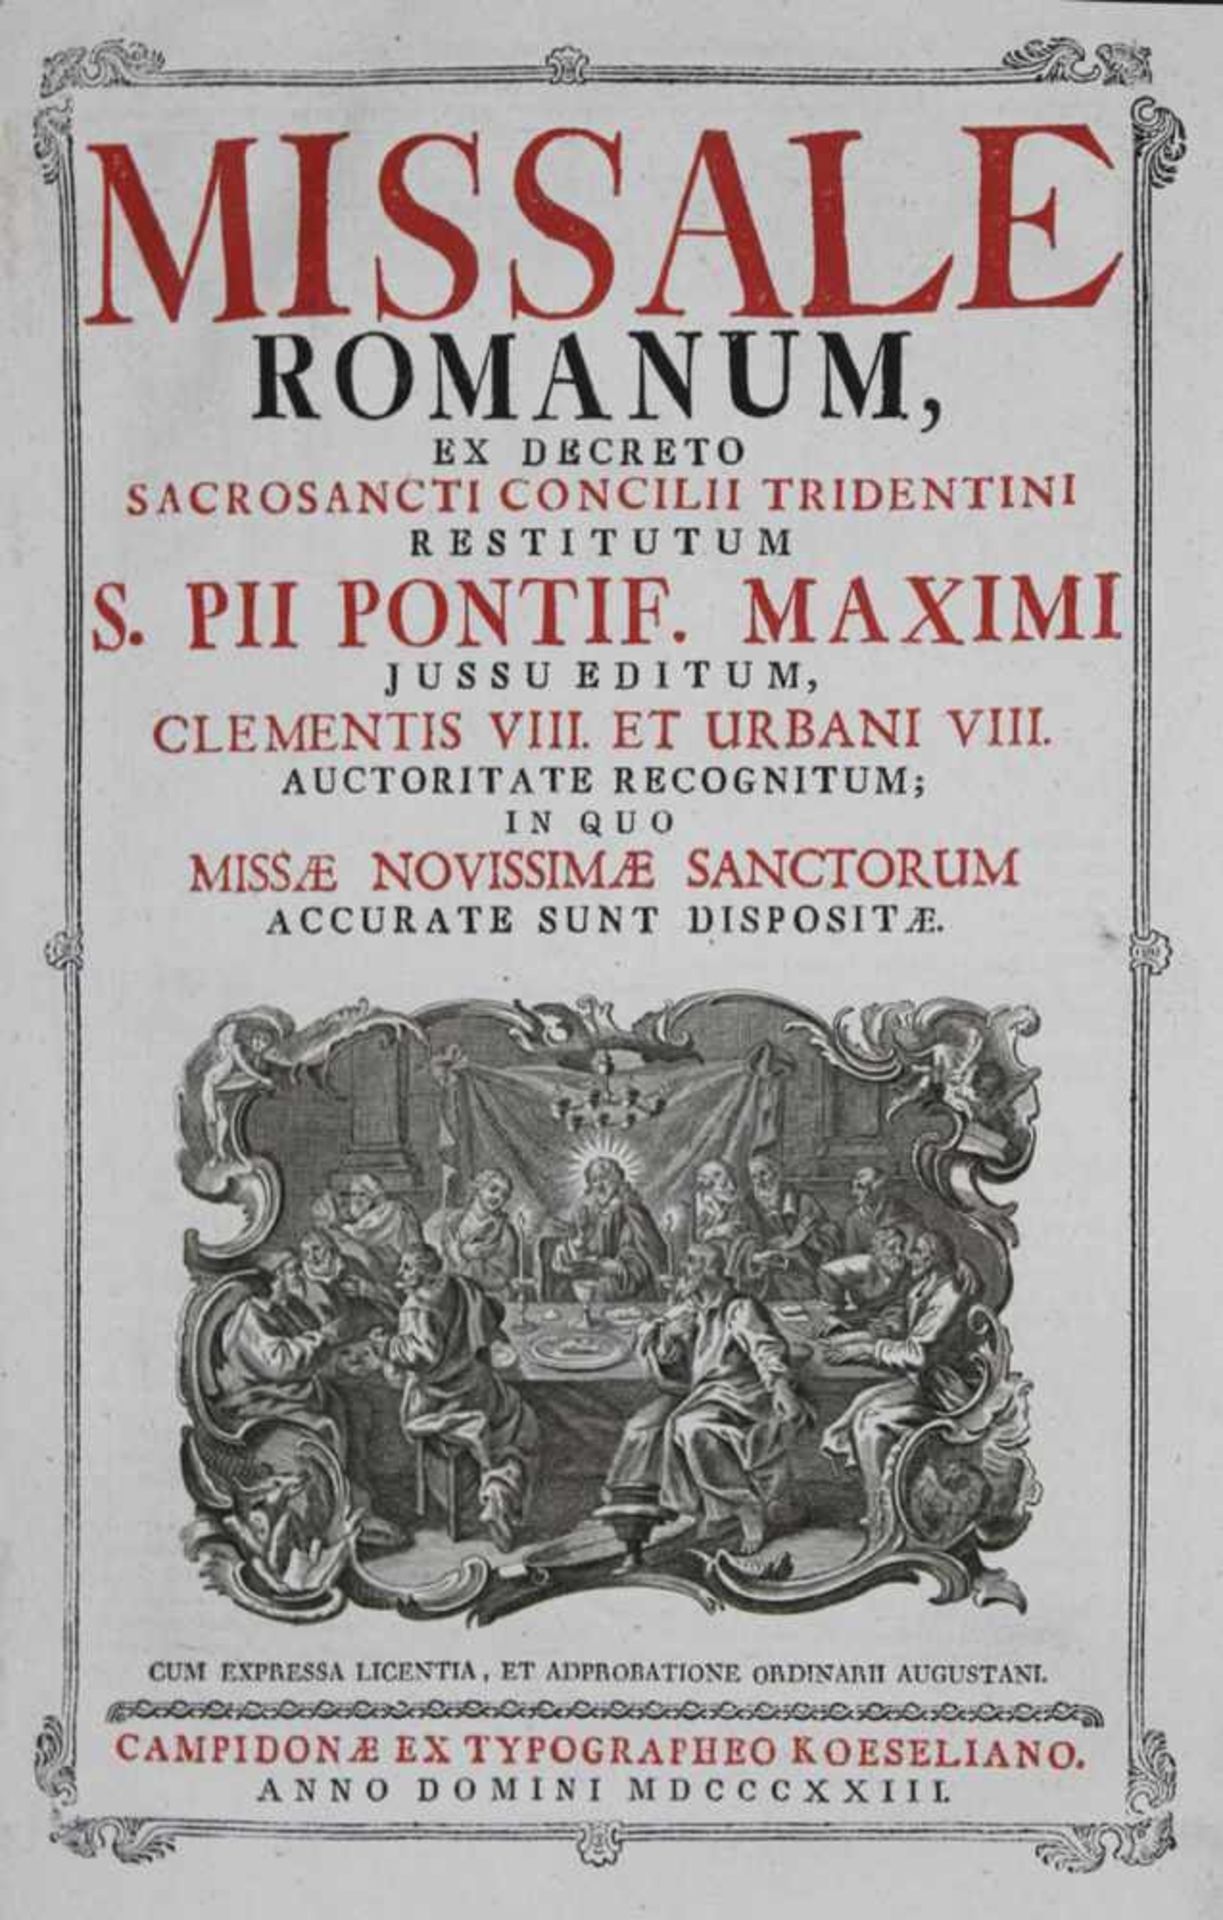 Missale Romanum,Ex decreto sacrosanti concilii Tridentini restitutum... Kempten, Koesel 1823. Fol.